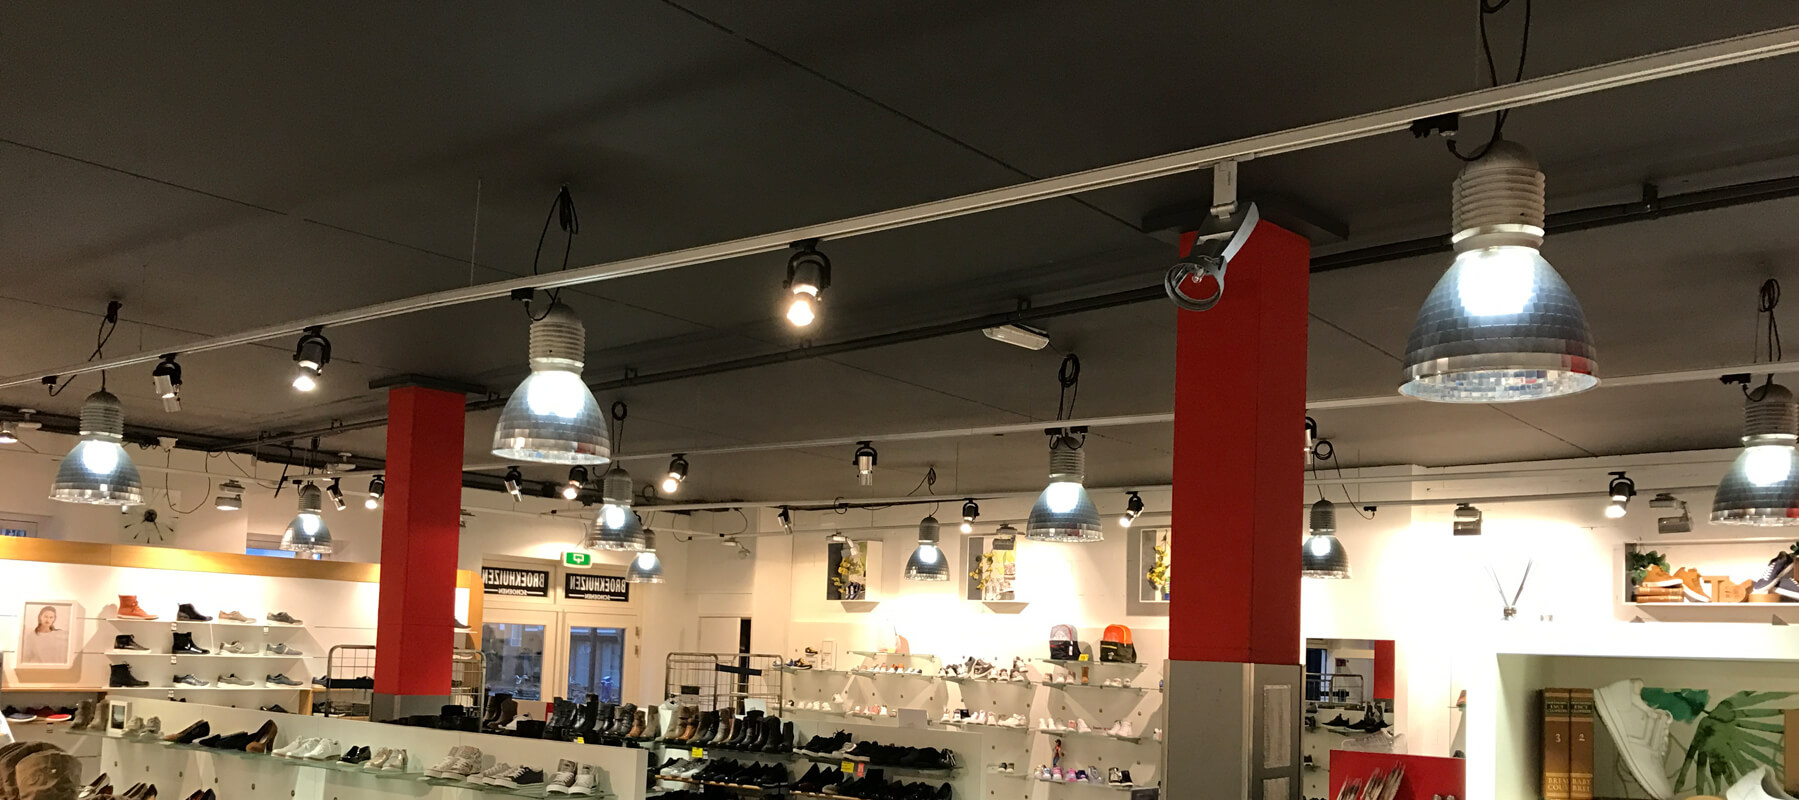 Sta op mate zoete smaak LED retailverlichting | Producten in goed licht - Bespaar direct | saled.nl